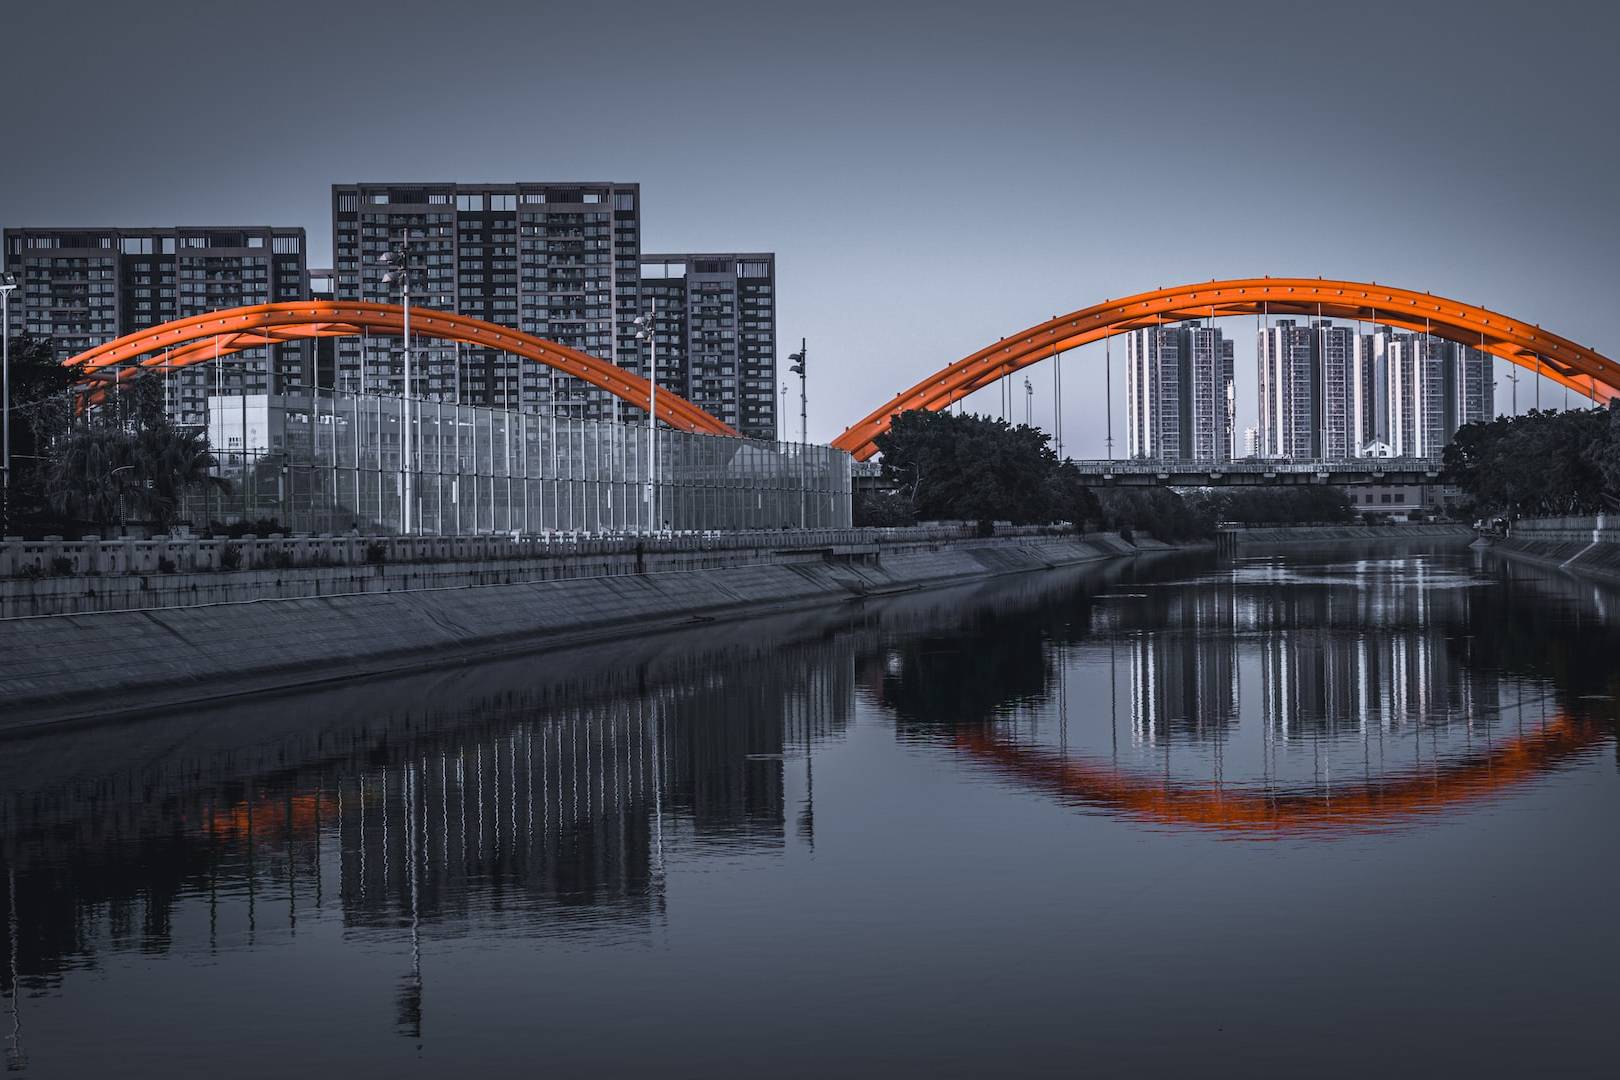 orange and white bridge over river